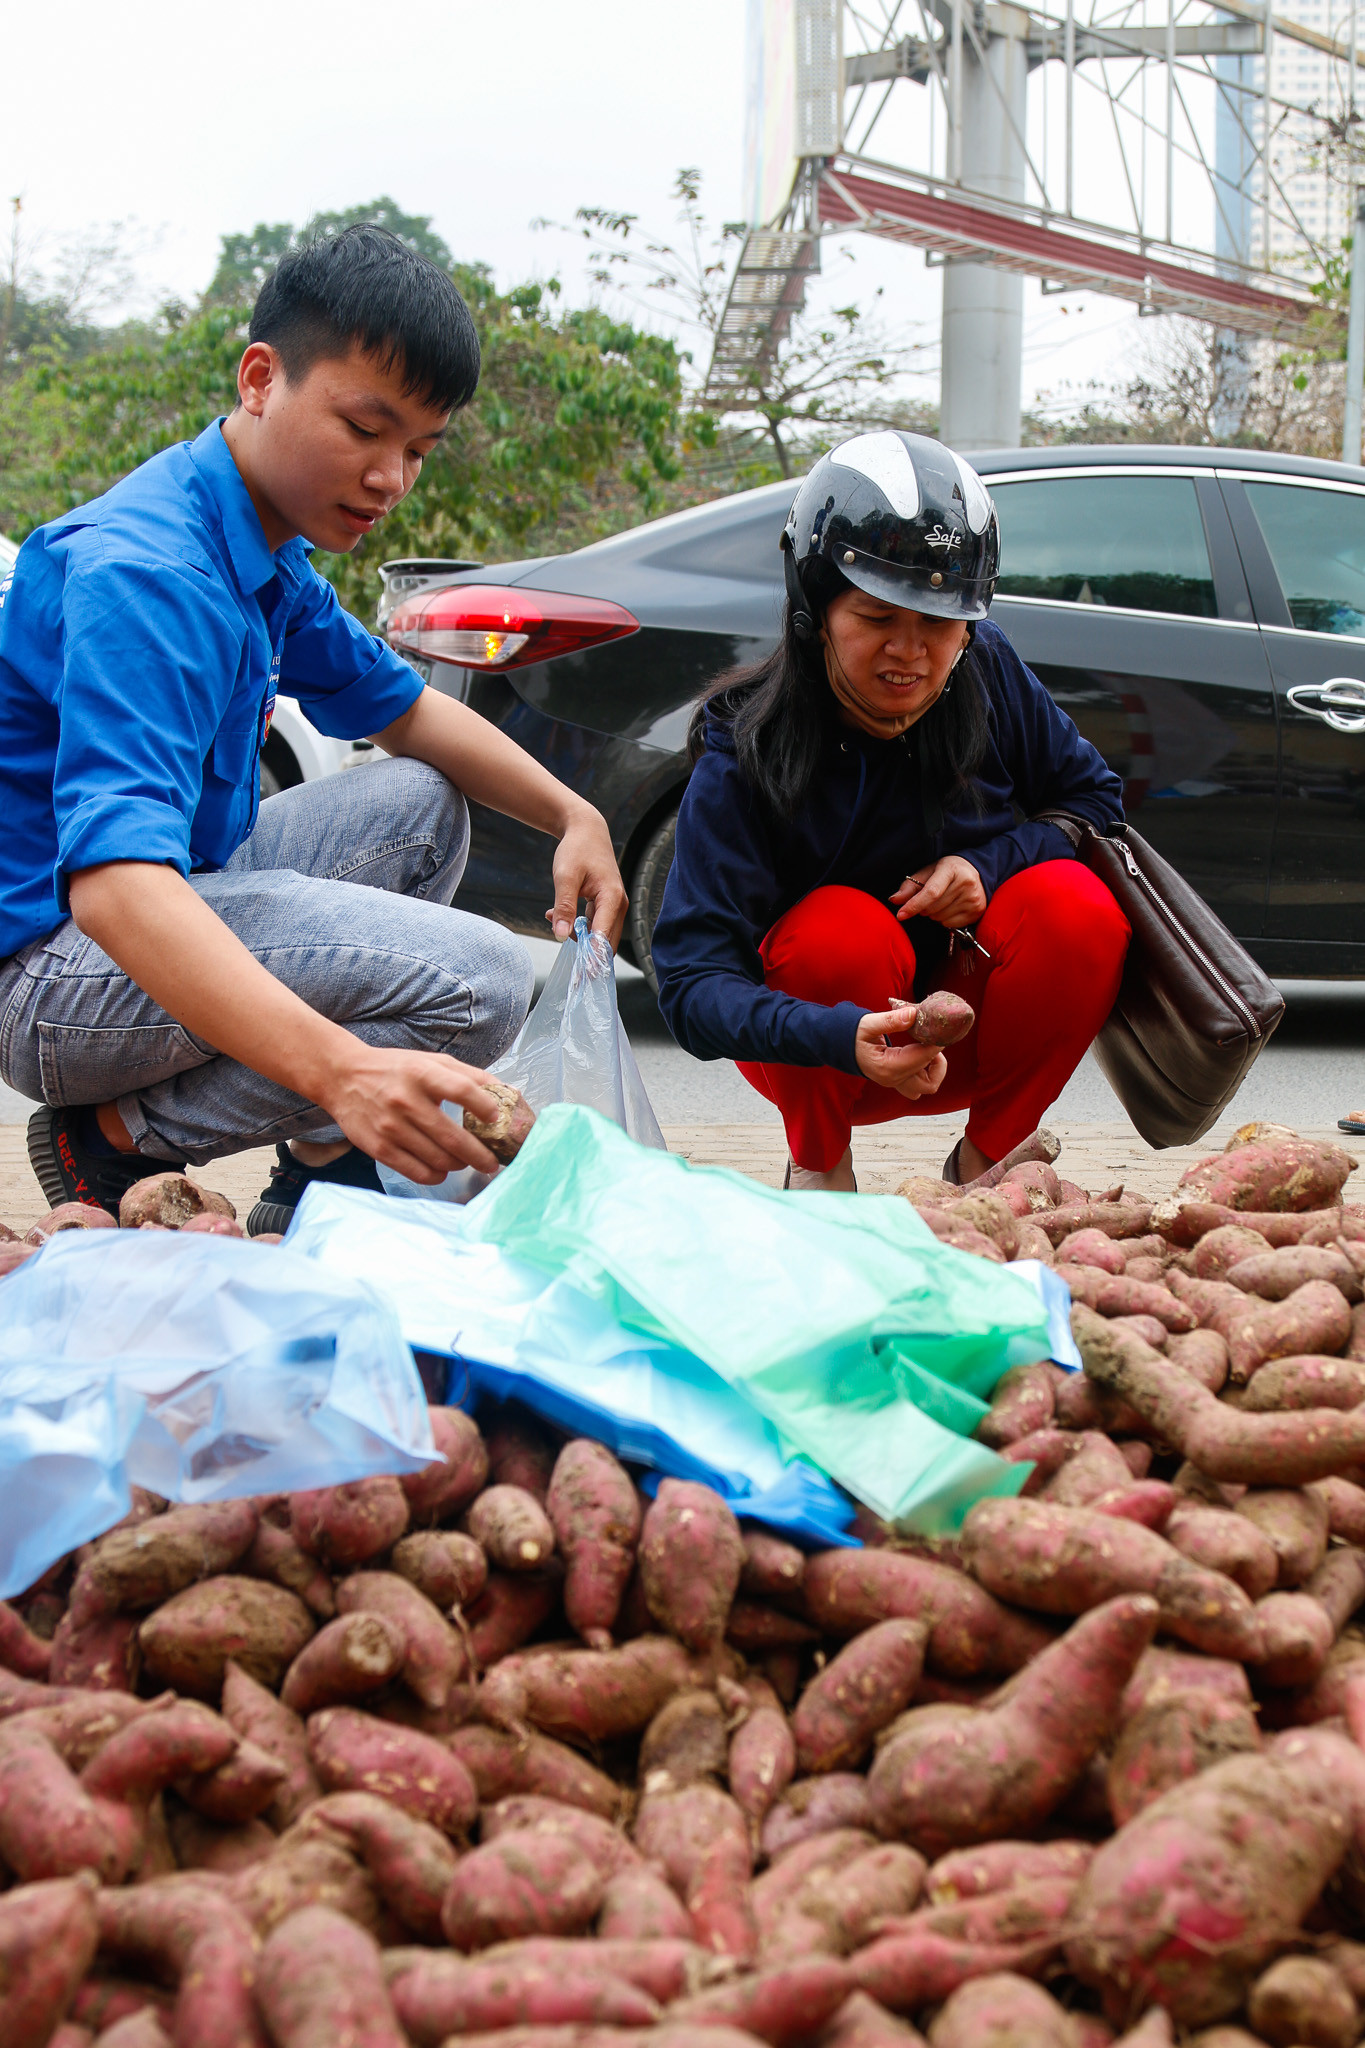 Cộng đồng tình nguyện Việt Nam và chiến dịch “Khoai lang nghĩa tình” tại Hà Nội